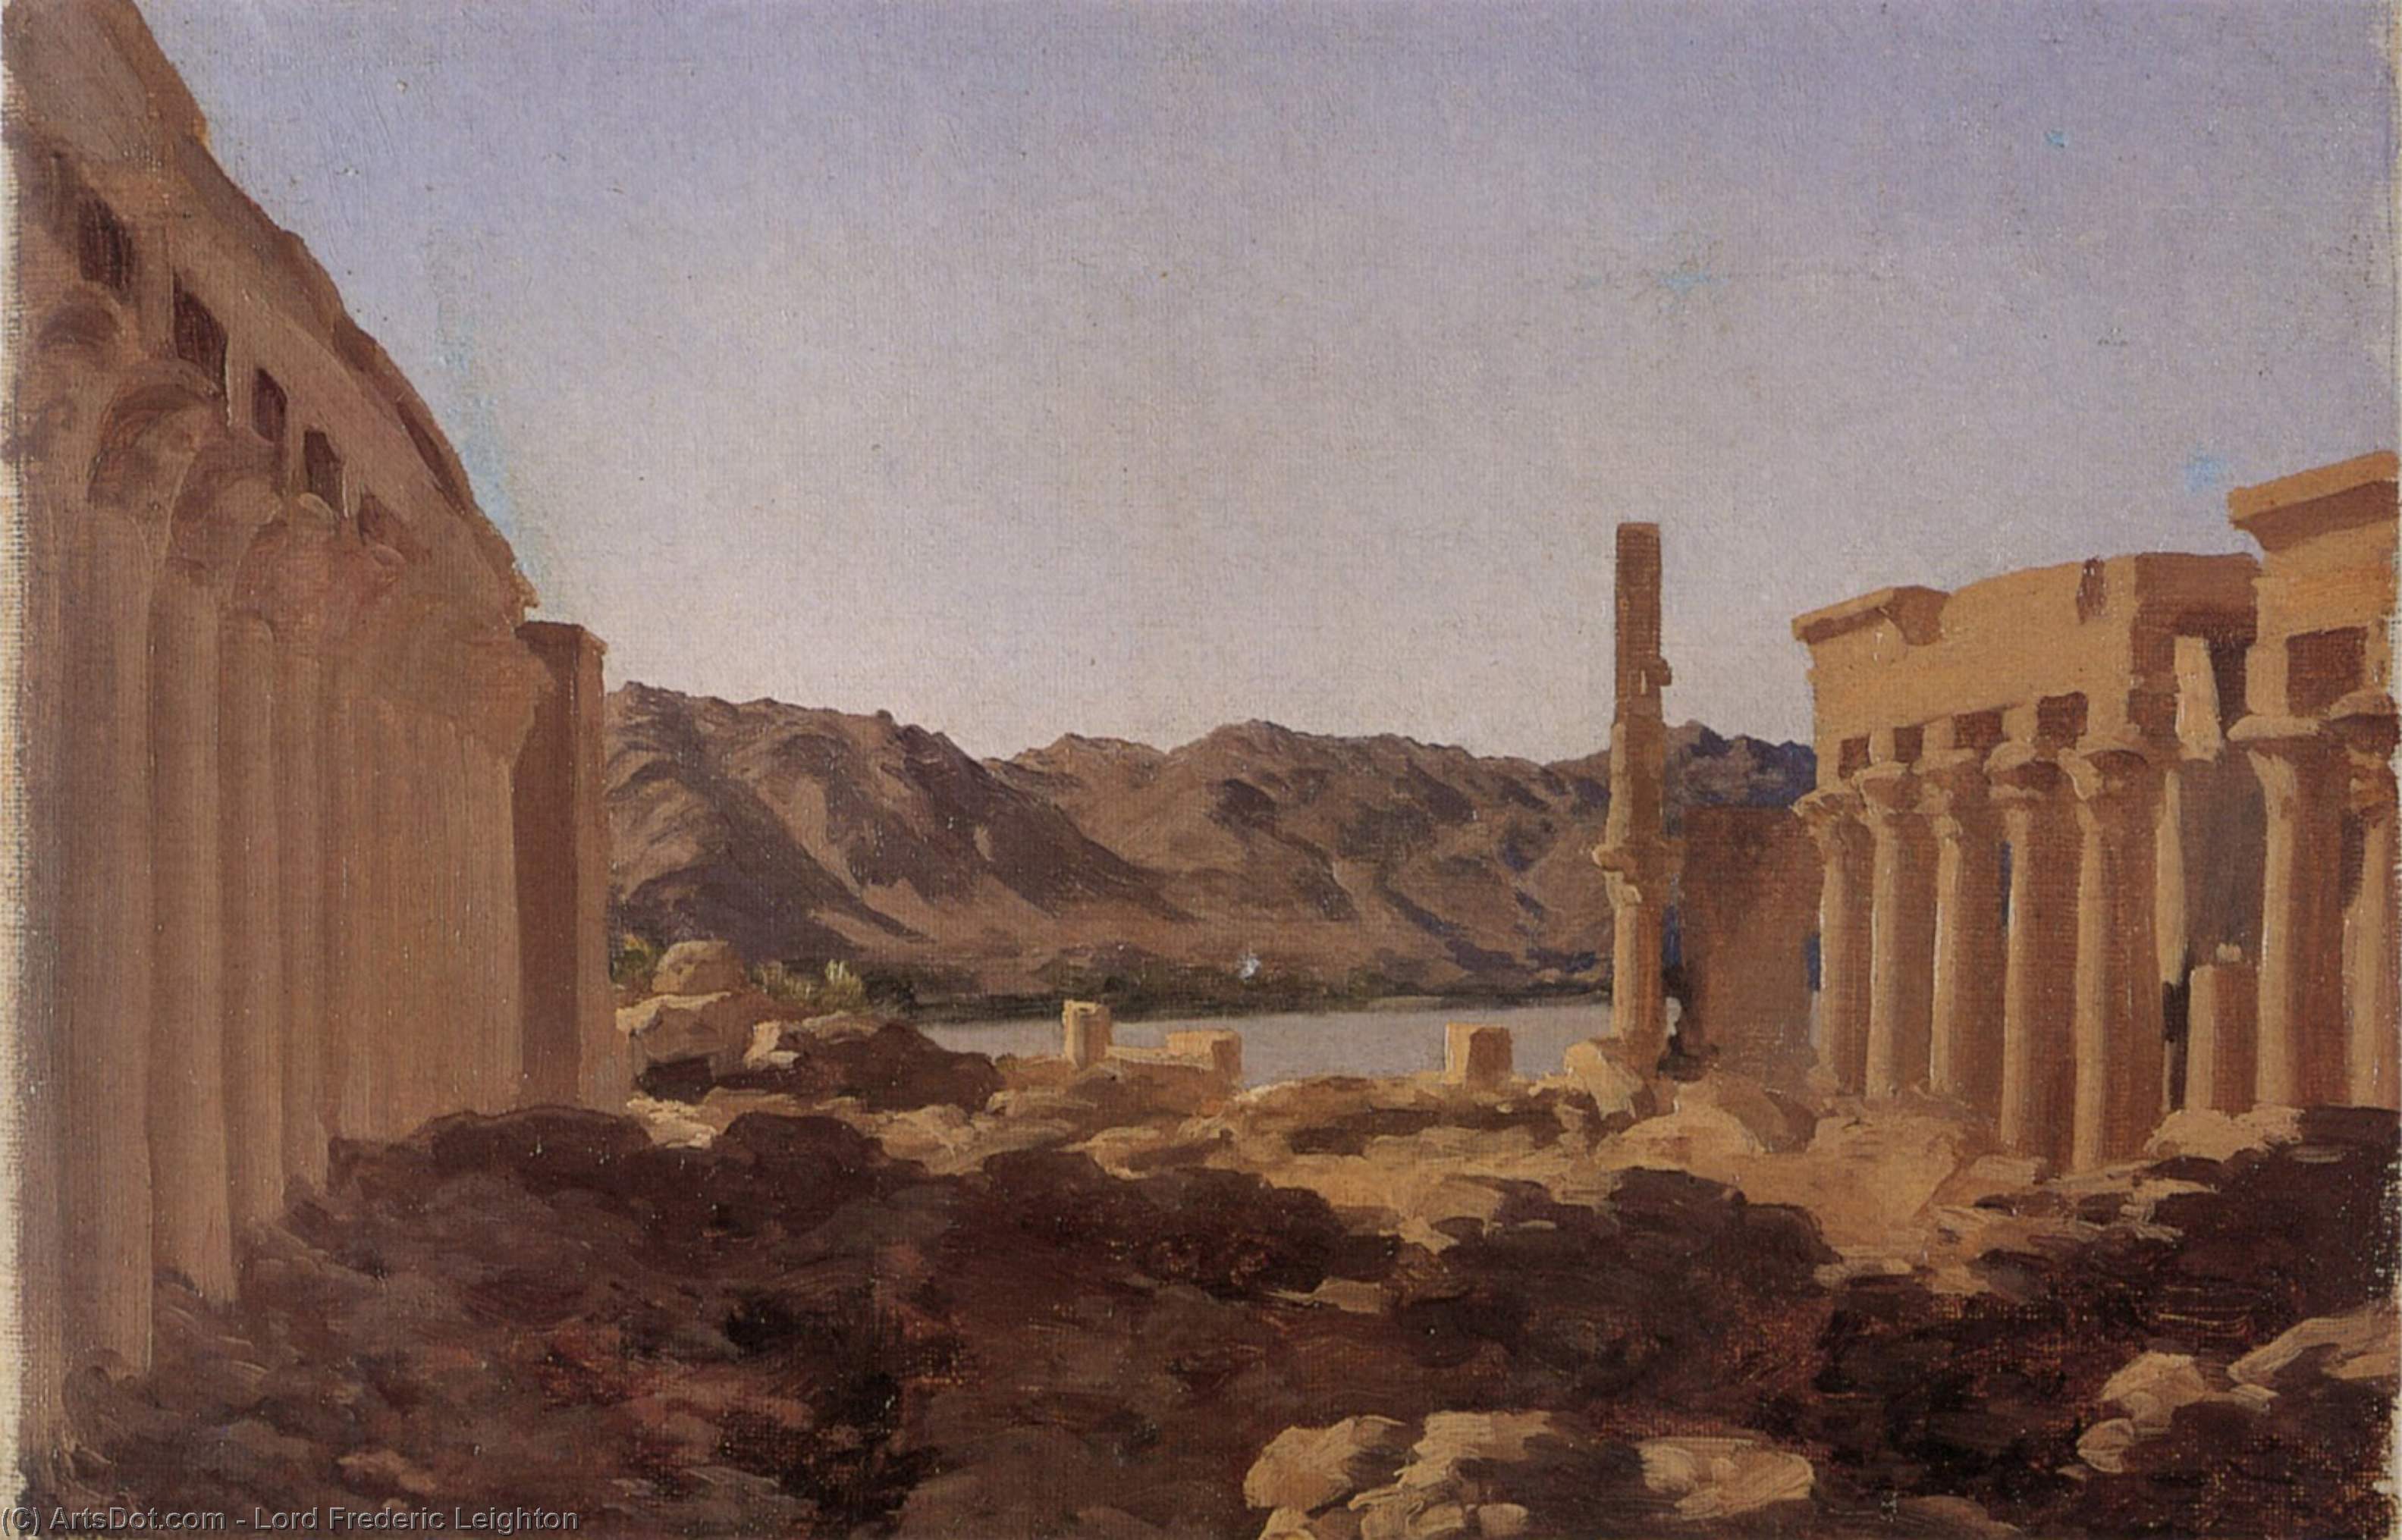 WikiOO.org - אנציקלופדיה לאמנויות יפות - ציור, יצירות אמנות Lord Frederic Leighton - The Temple at Philae